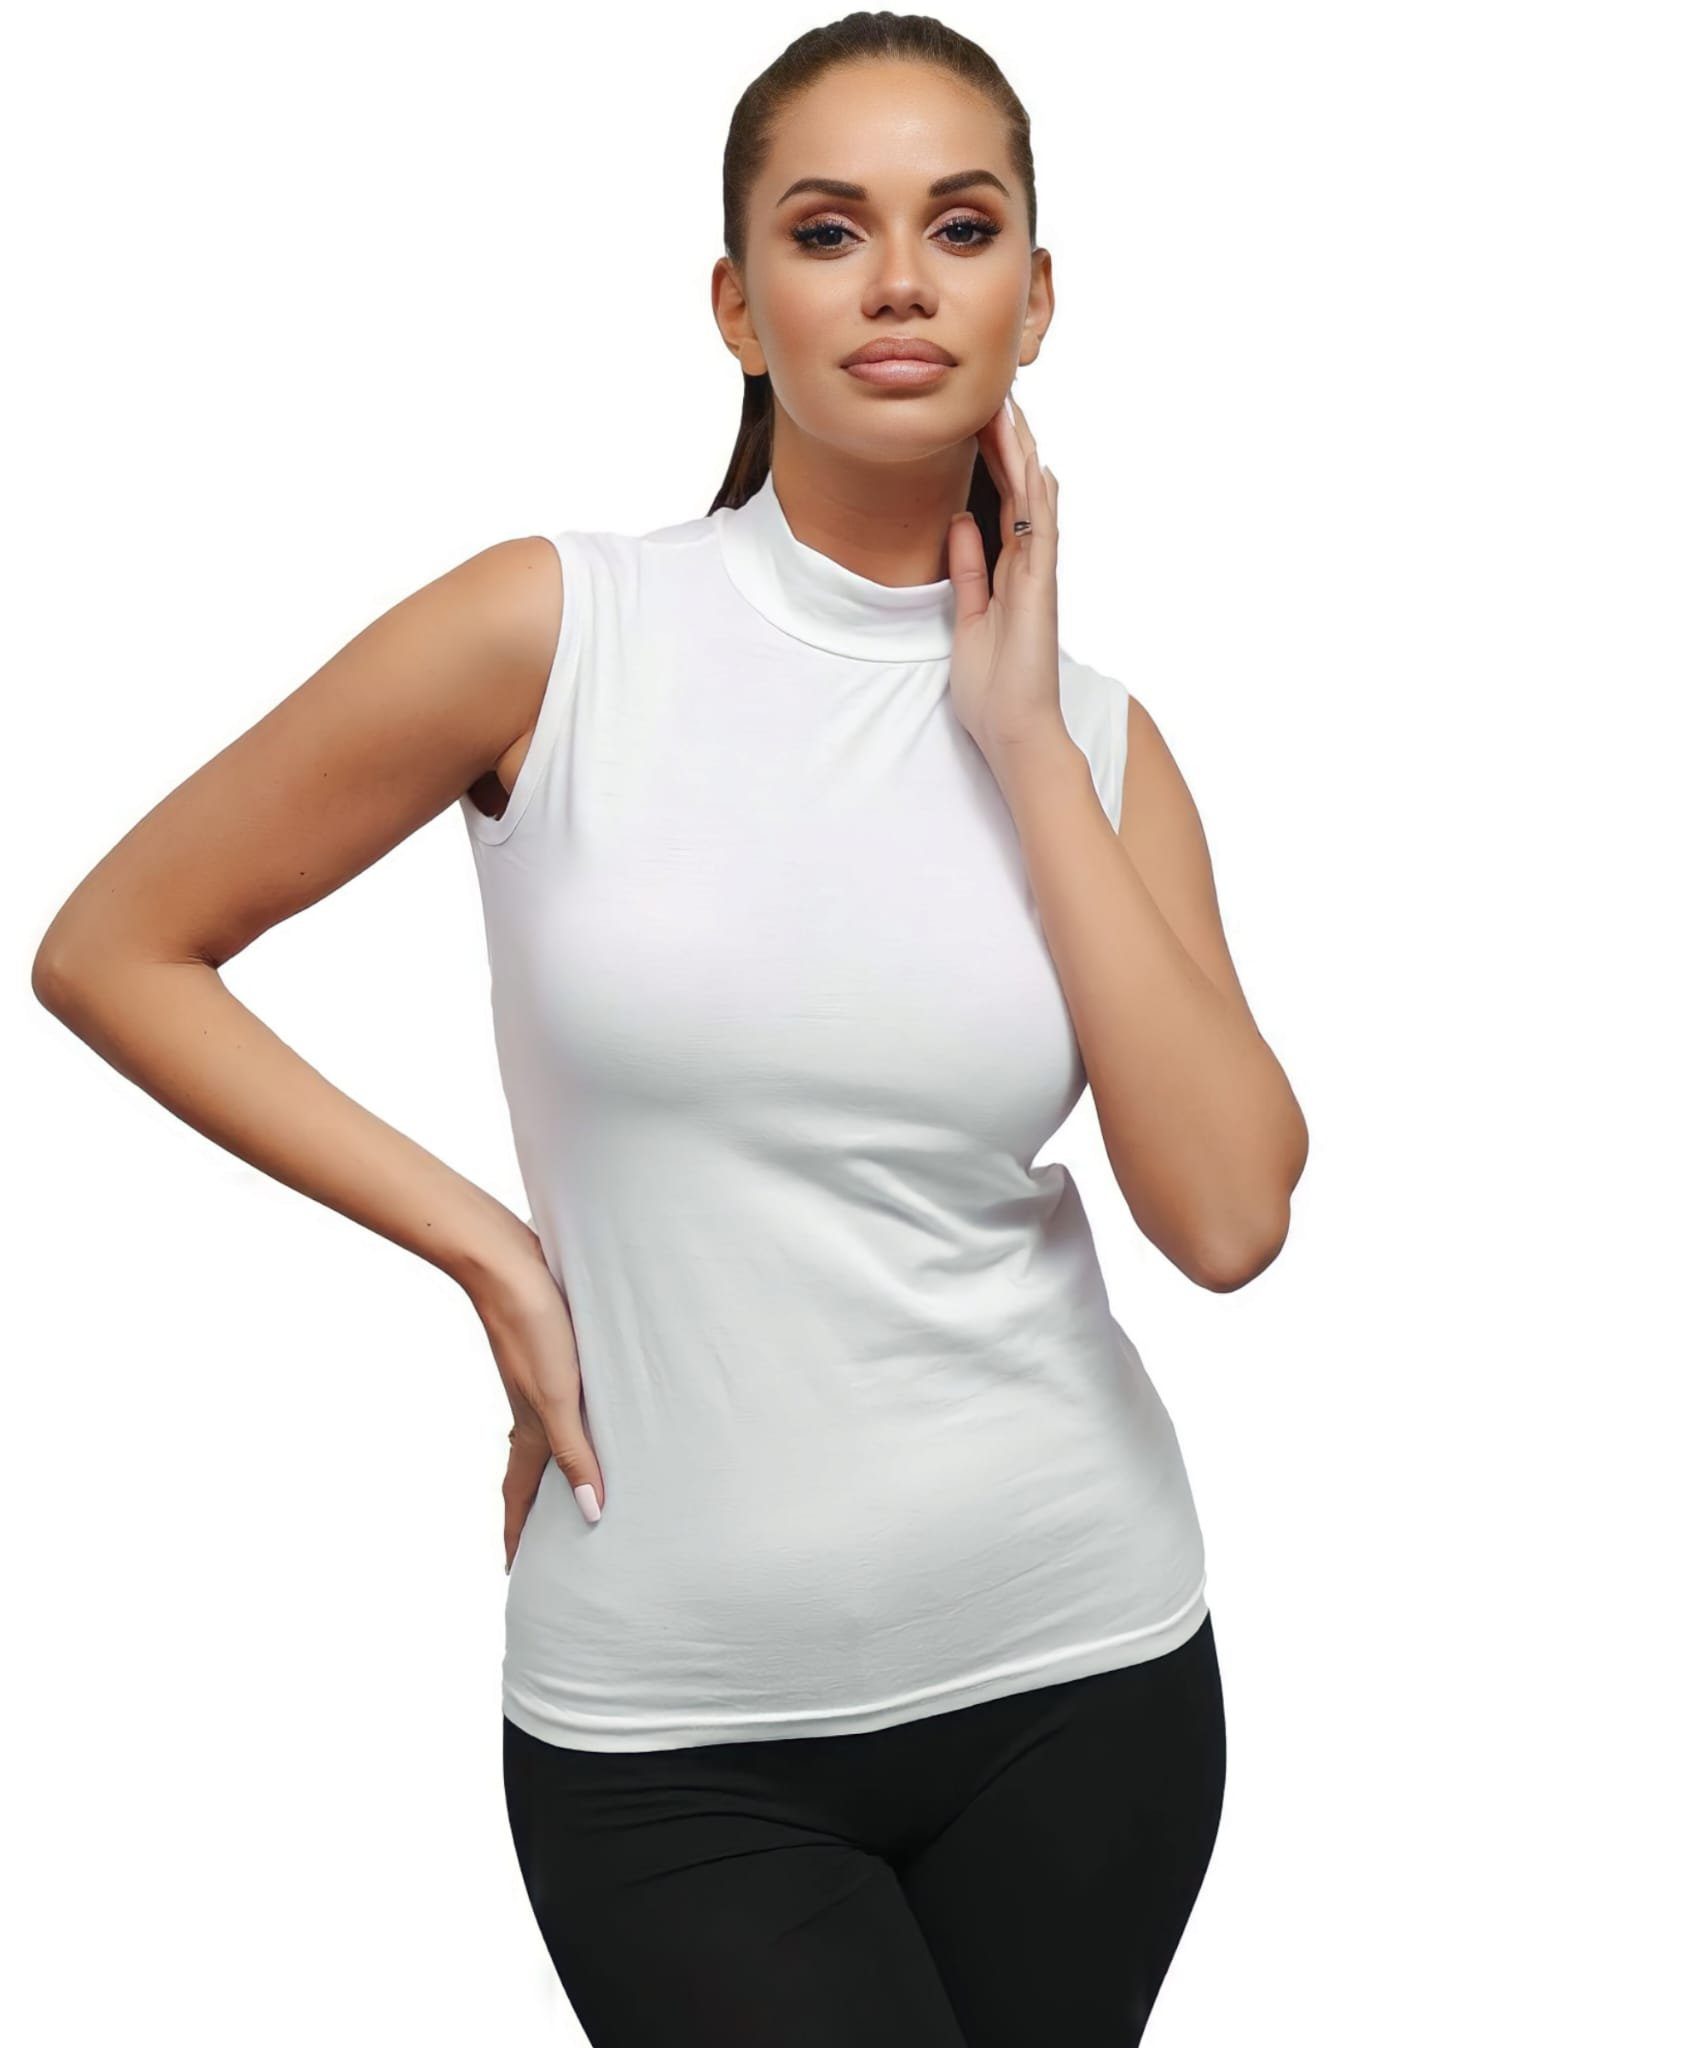 Kota Shirttop Kragentop Unterhemd Halbkragen Weiß Weiches Atmungsaktiv,Hautfreundlich, Gewebe Shirt ärmellos mit Body Damen